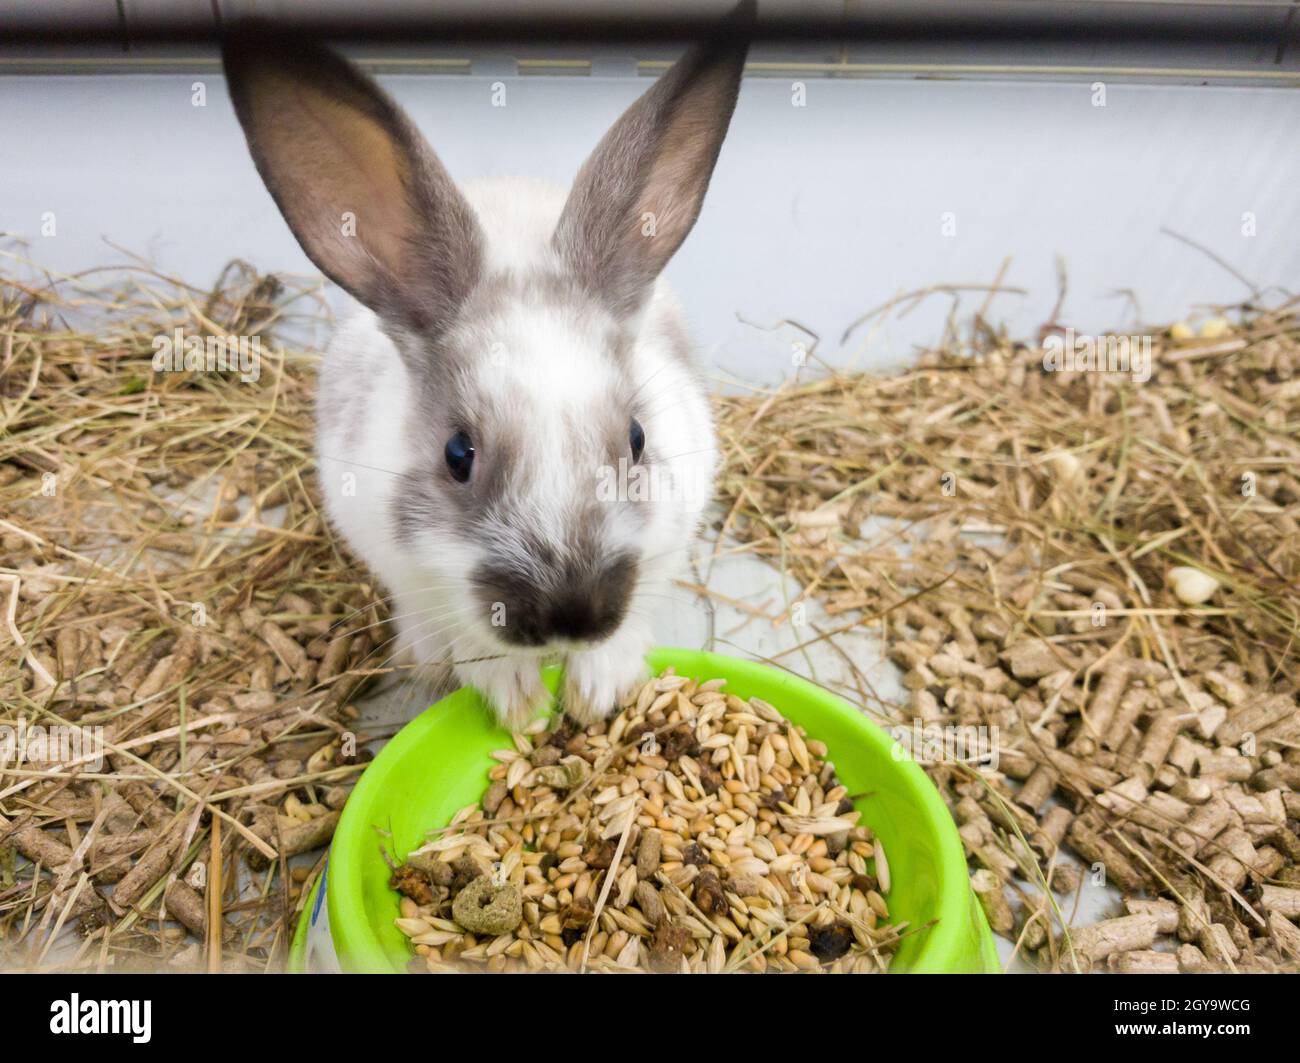 Conejo decorativo casero en una jaula gris de color gris-blanco. El conejo come de un tazón verde. Una serie de fotos de una mascota de roedores mona y esponjosa. Poco e Foto de stock